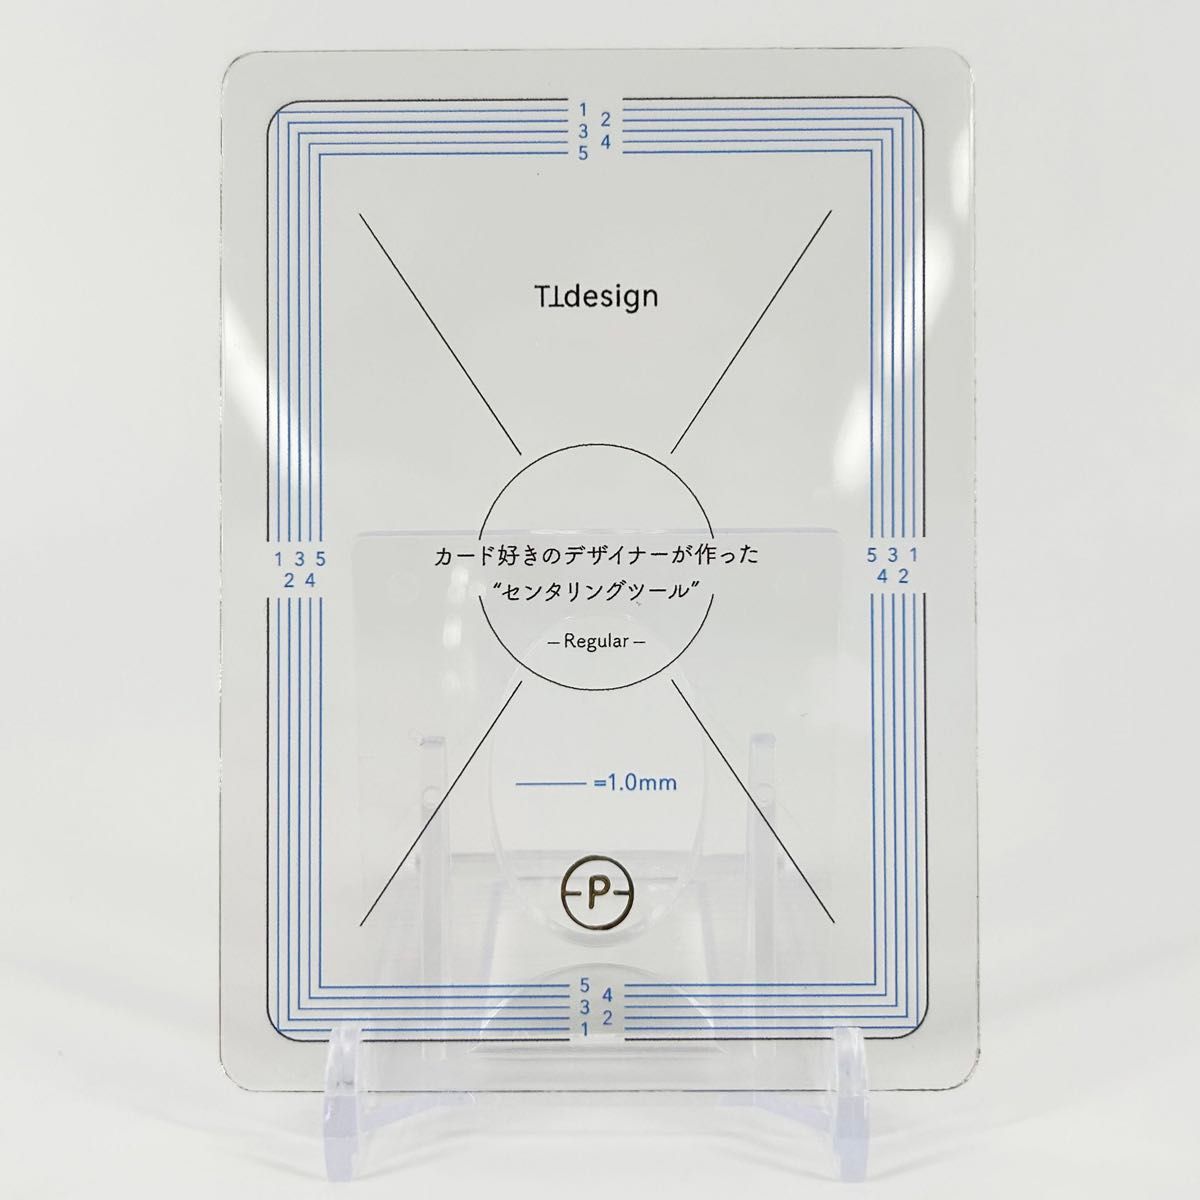 【TTdesign】センタリングツール レギュラー 1.0㎜ ポケモン PSA トレーディングカード TCG 使い方説明書付き